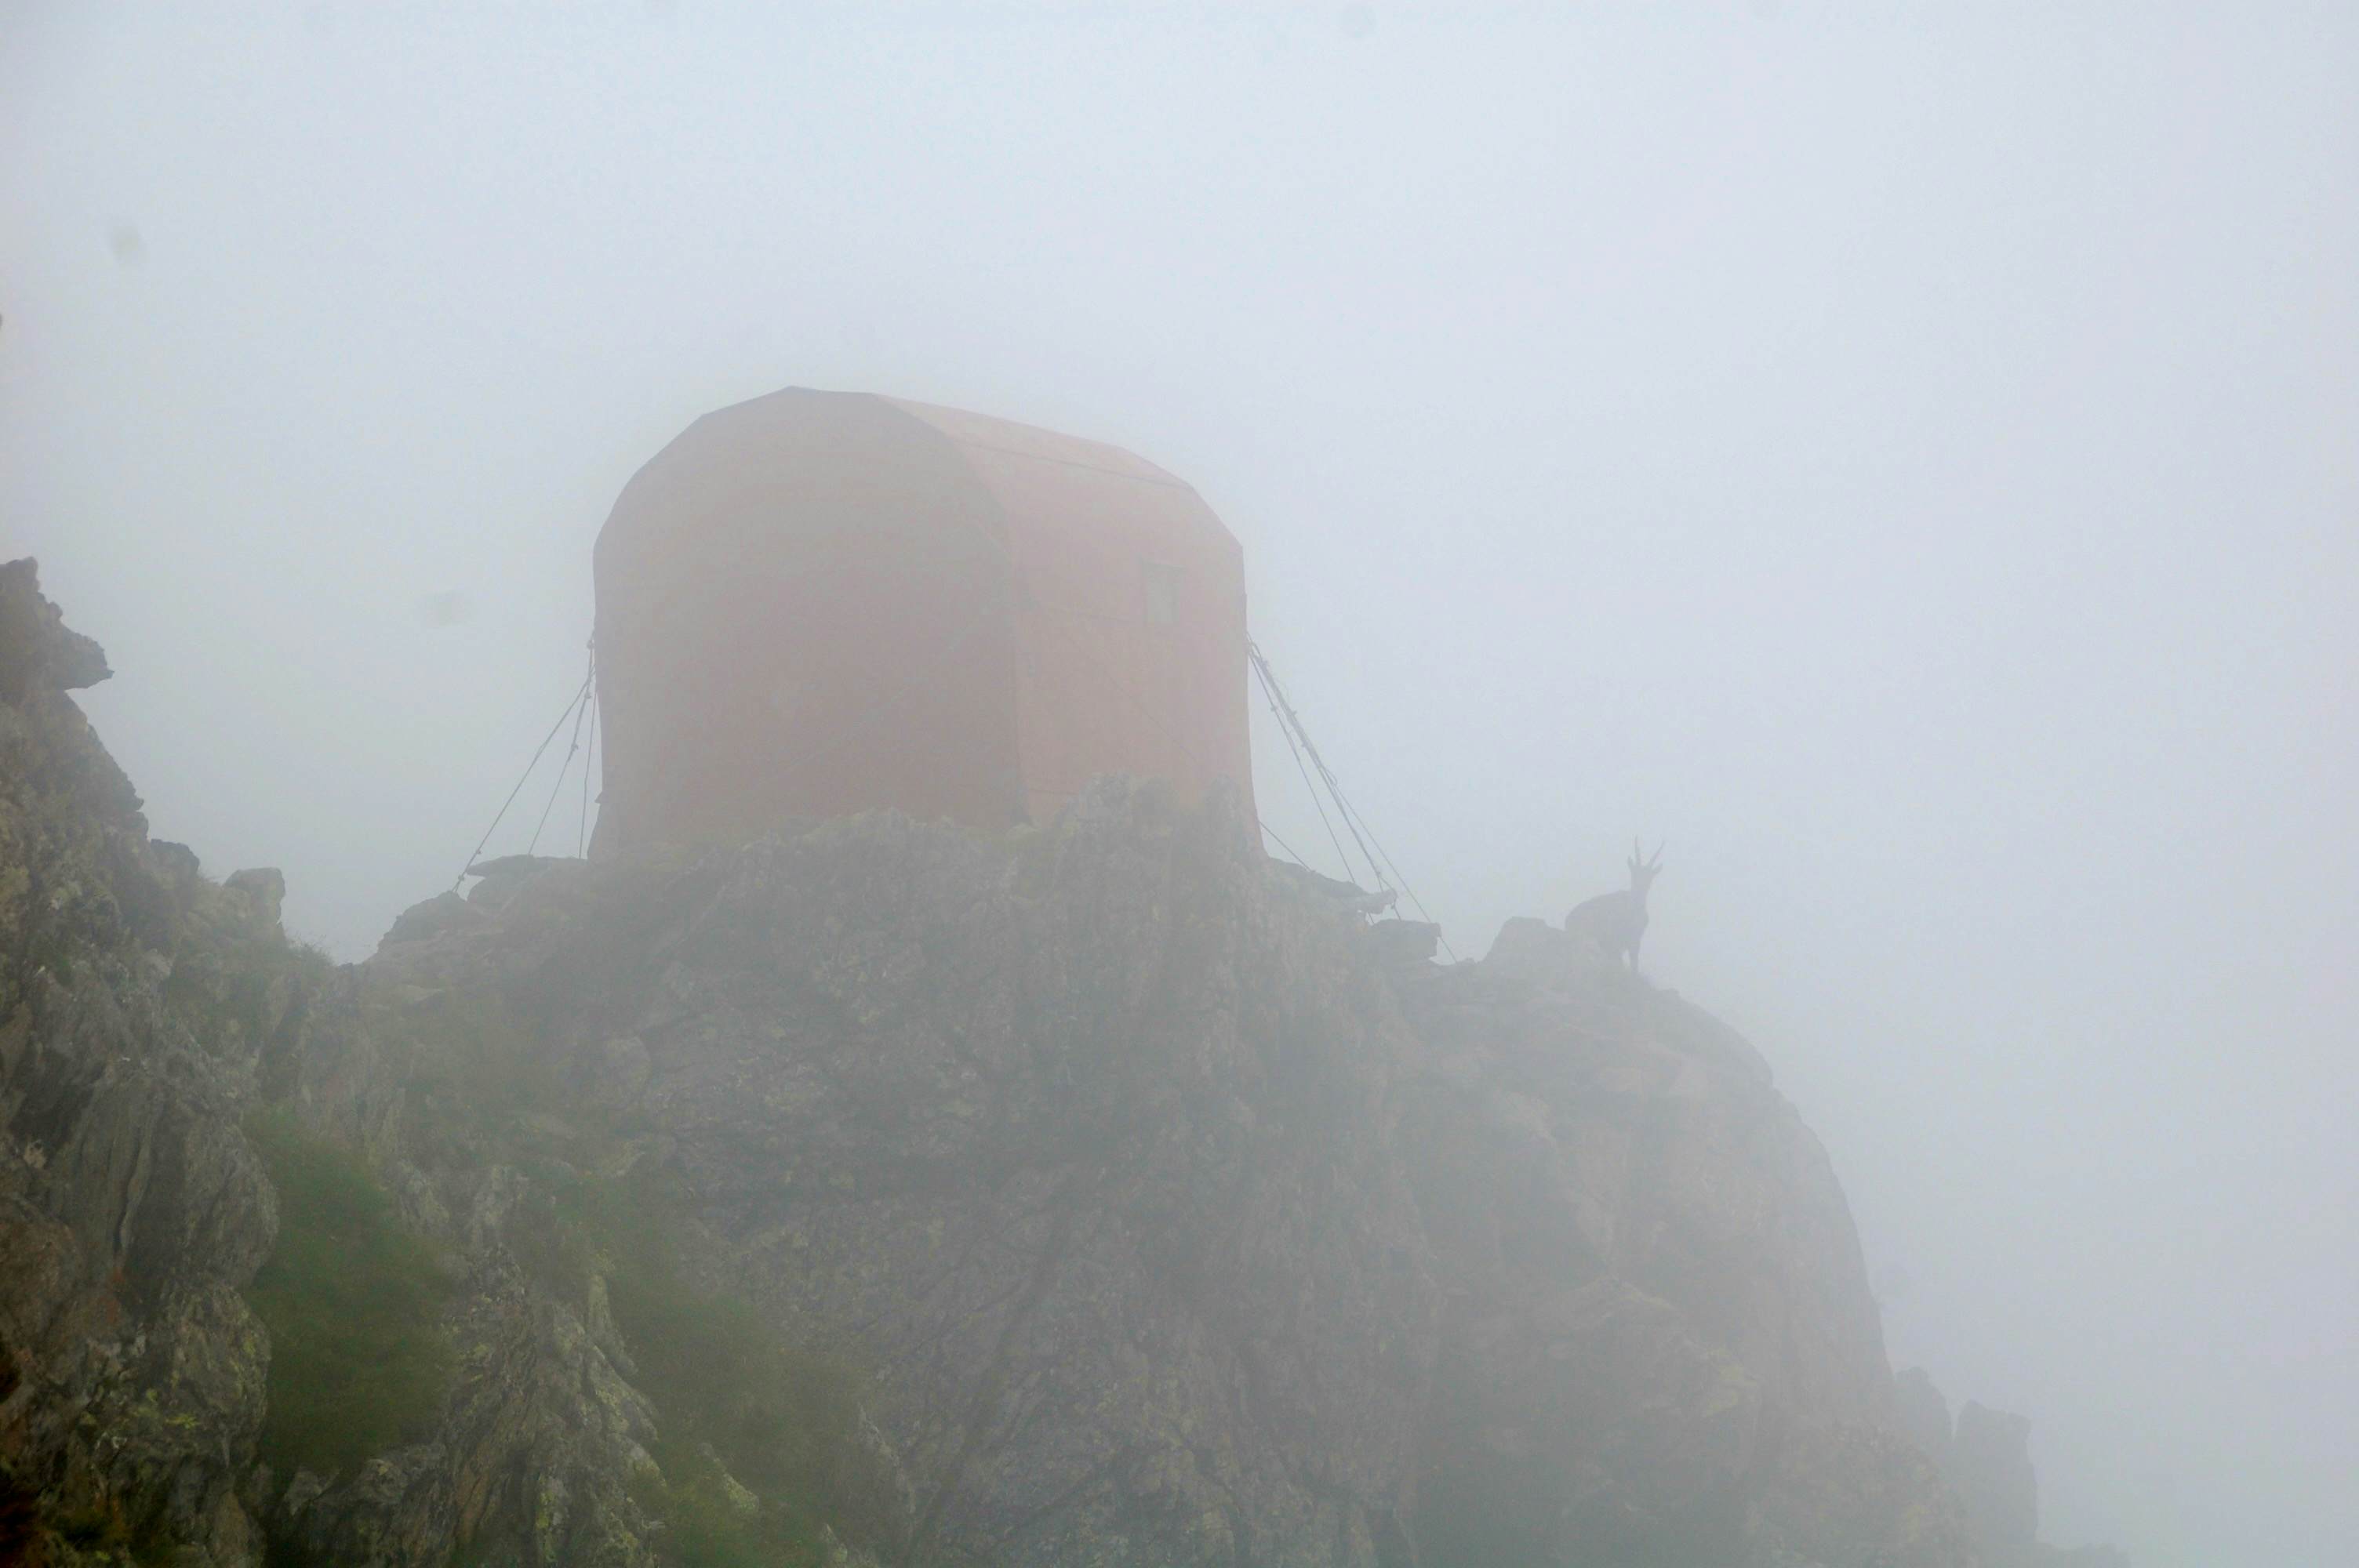 Endlich: Das Biv. Varese taucht im Nebel auf